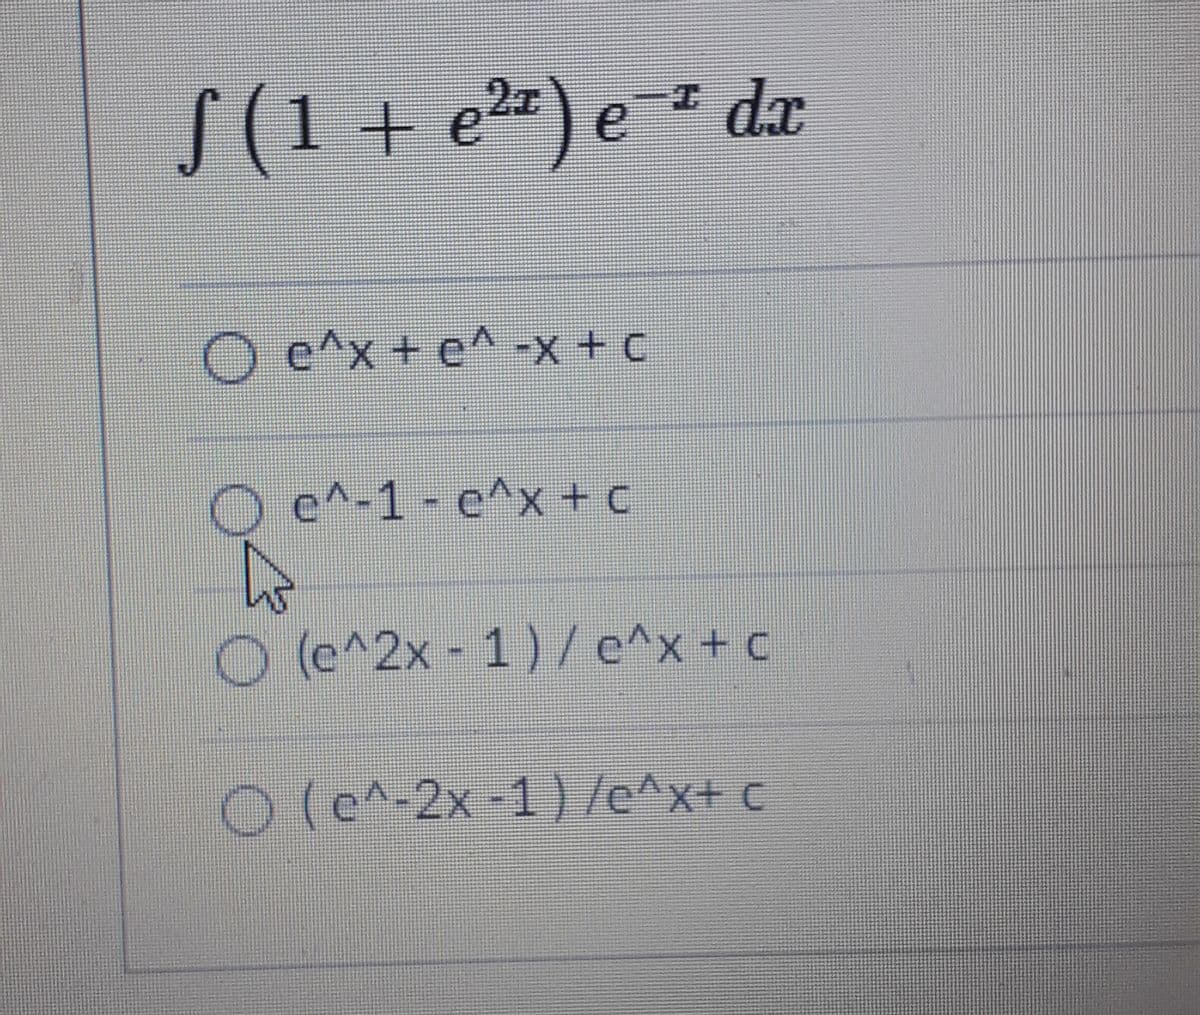 S(1 + e²=) e-² dx
27
O e^x+ e^ -x + C
e^-1 - e^x+ c
(c^2x- 1)/e^x
+ c
O (e^-2x-1) /e^x+ c
